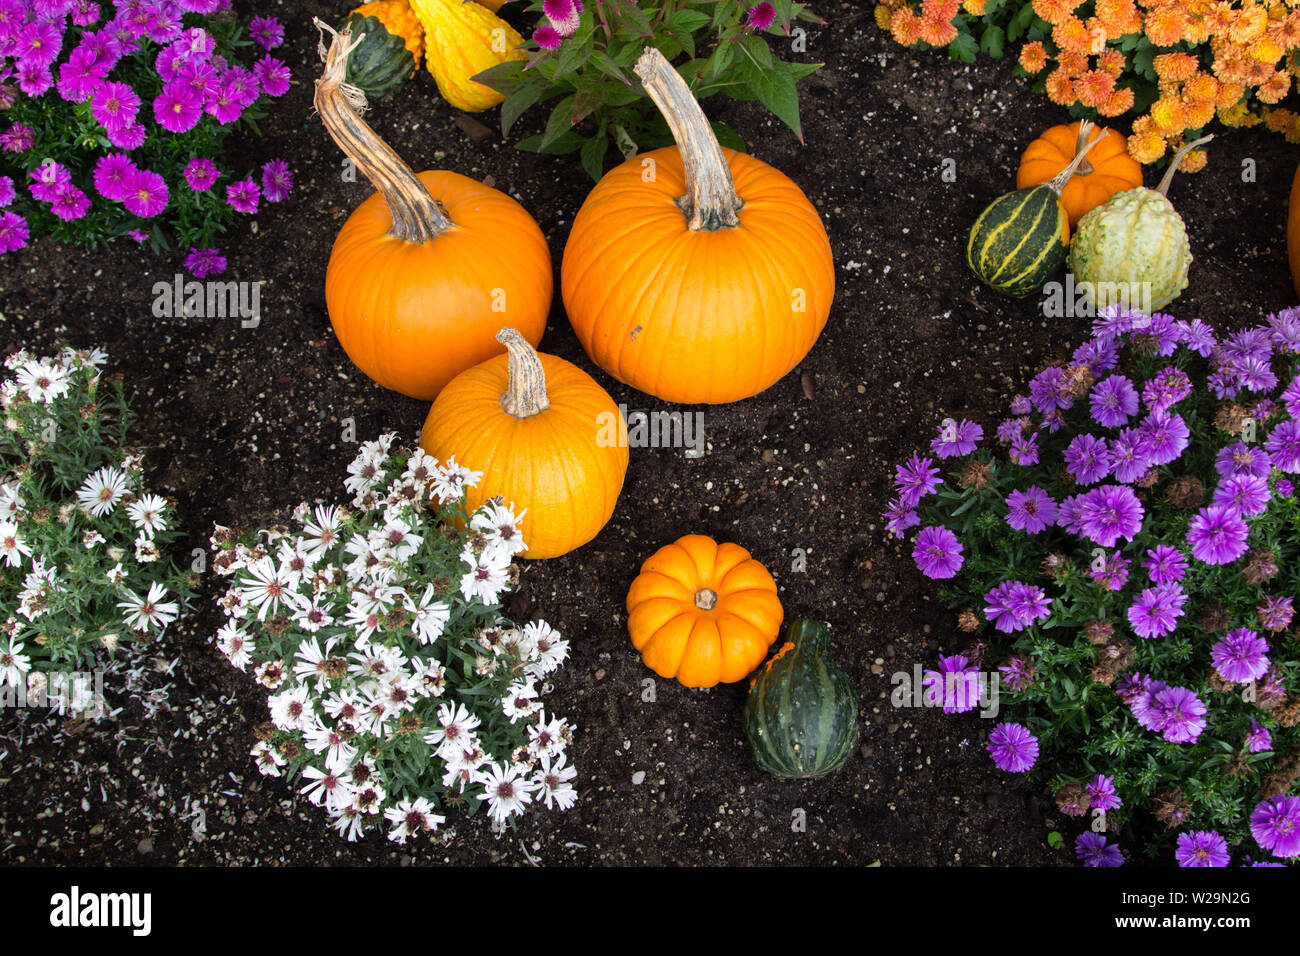 Herbst Ernte Hintergrund. Kürbisse und lebhaften farbigen Chrysanthemen in reichen schwarzen Garten Boden. Von oben mit hellen natürlichen Farbe gedreht. Stockfoto